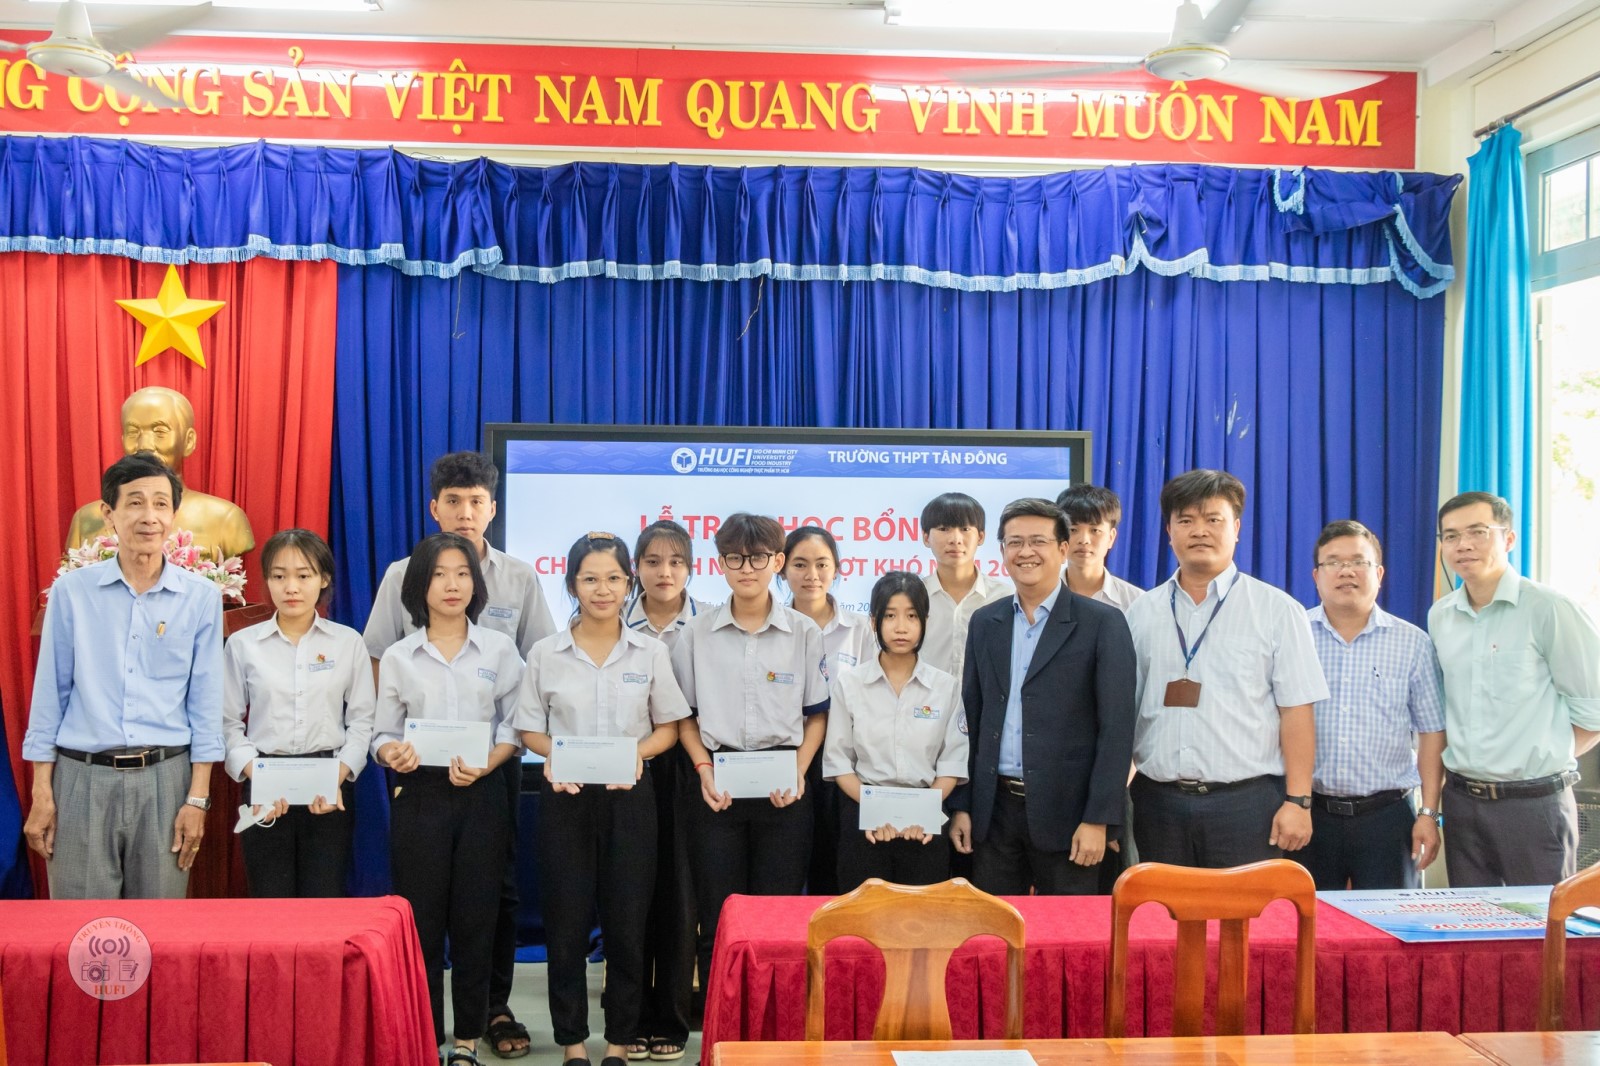 HUFI trao học bổng cho các em học sinh khó khăn, vượt khó tại Trường THPT Tân Đông, Tây Ninh